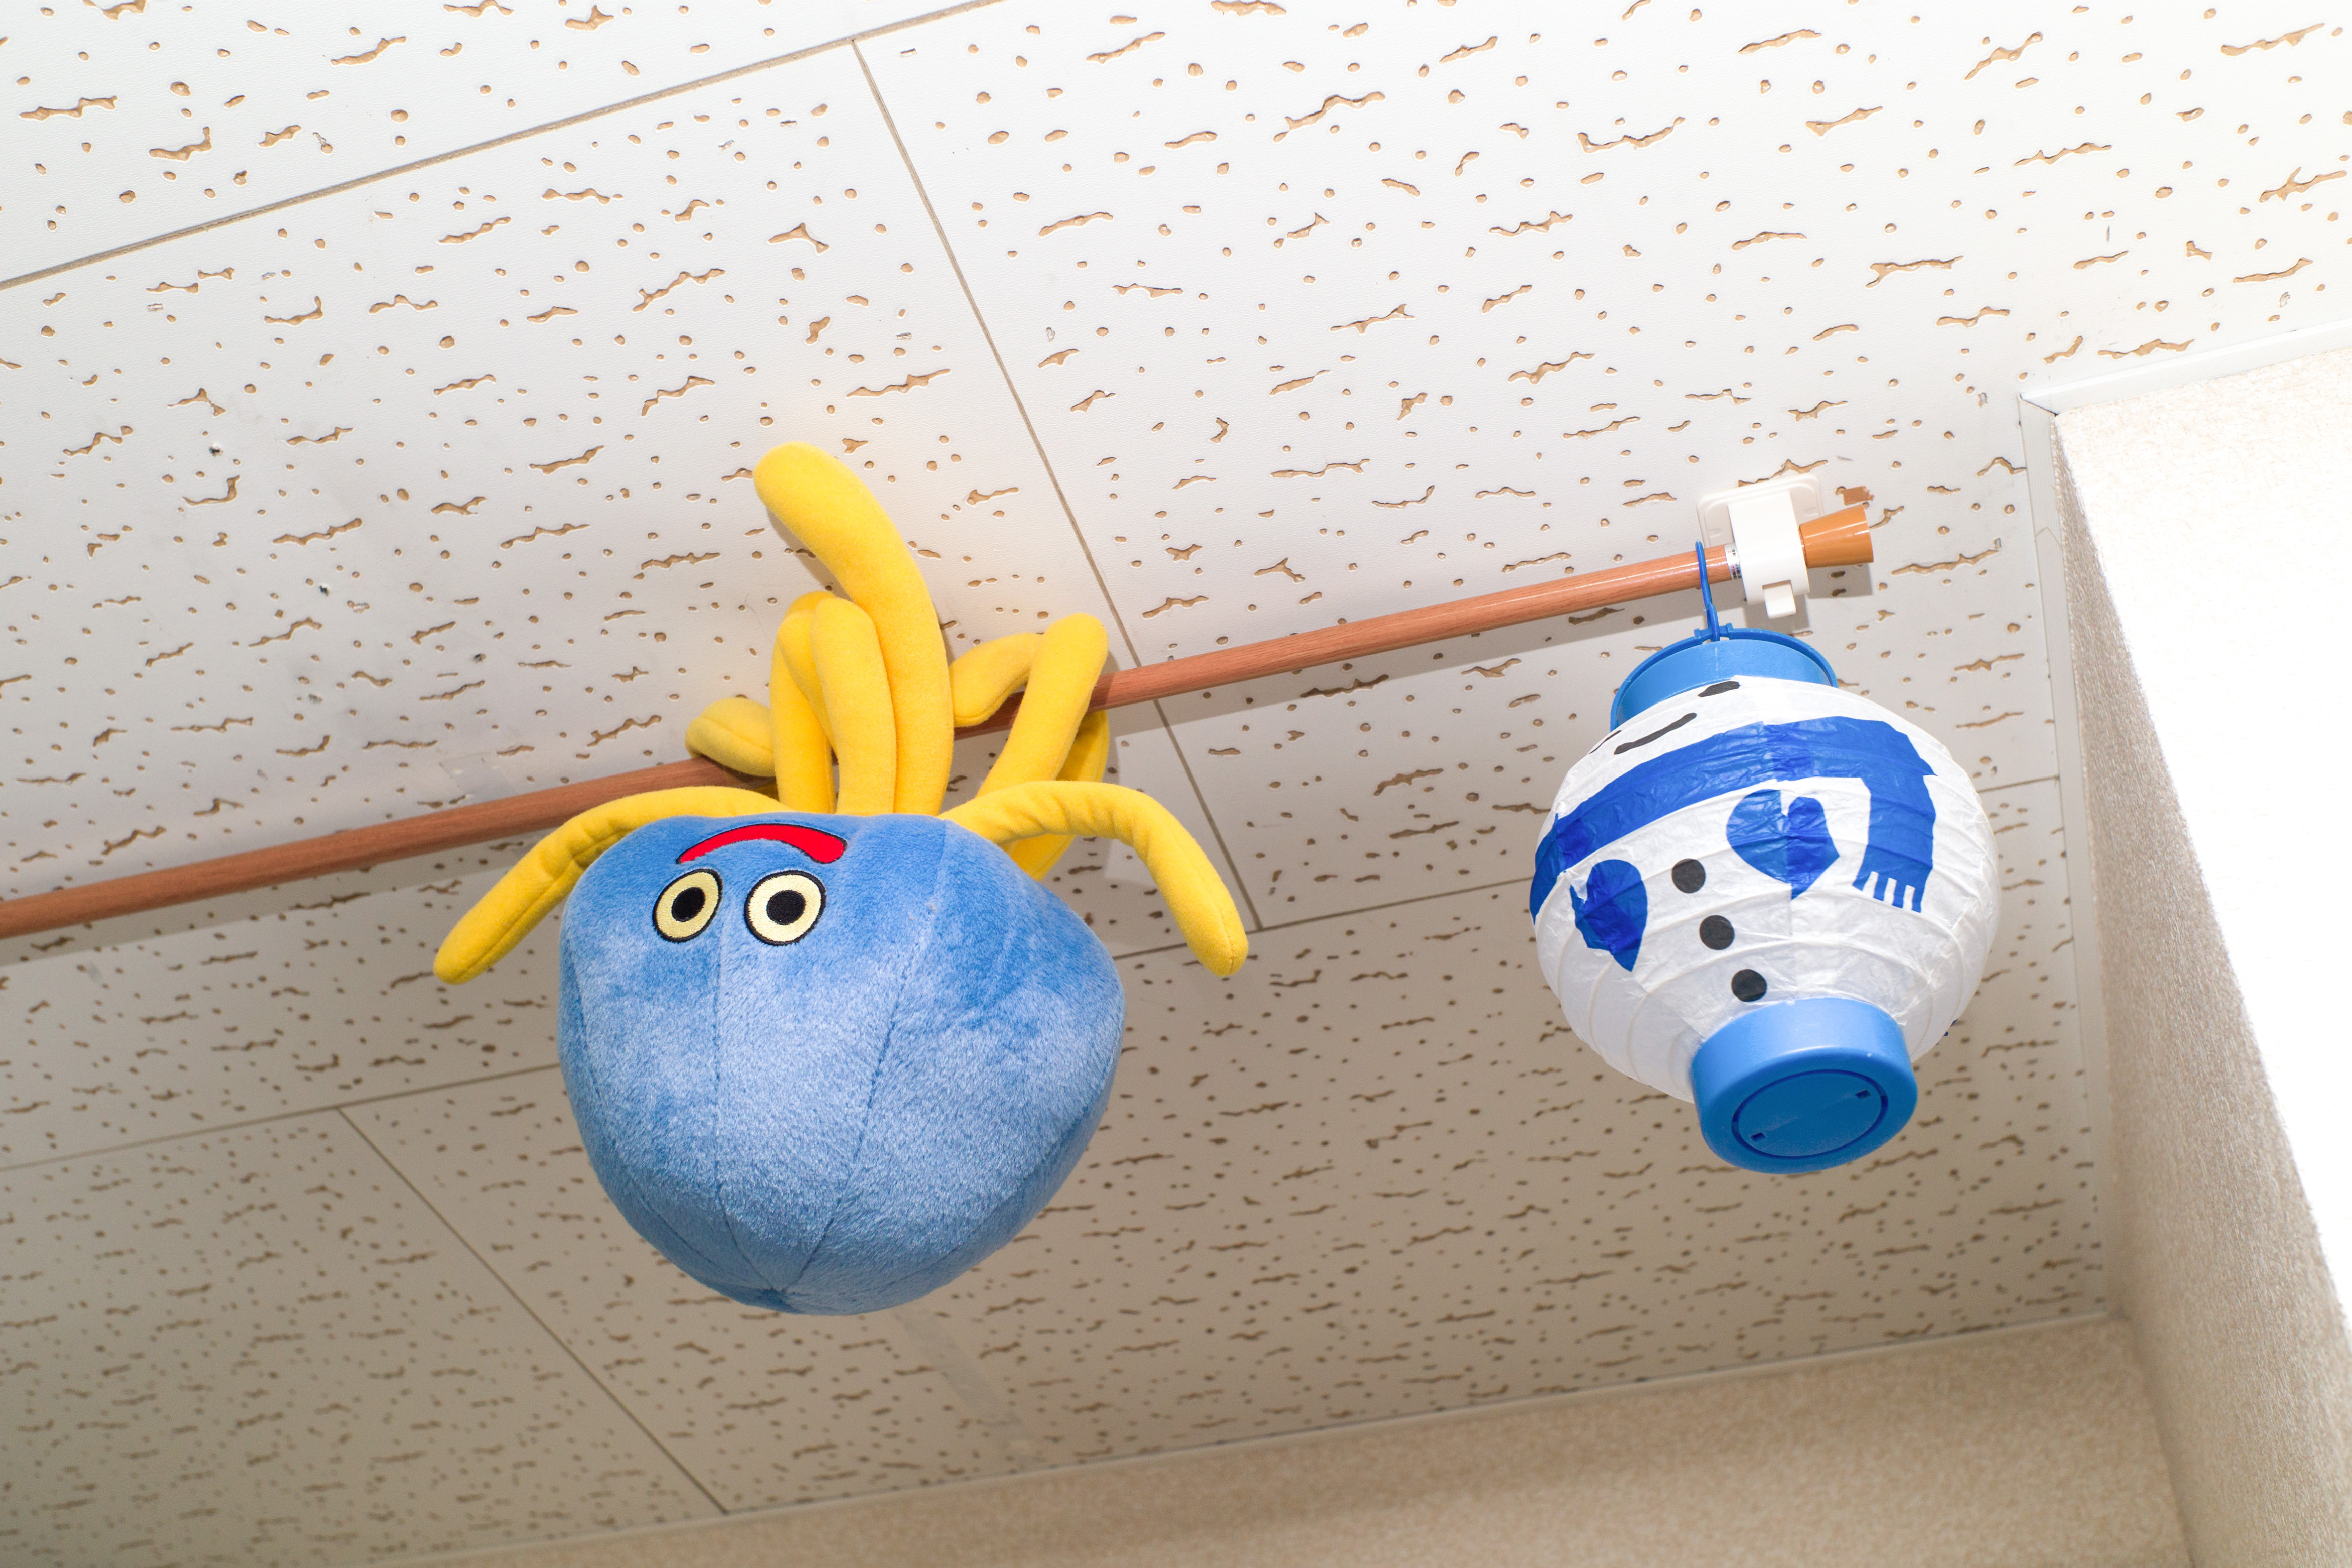 【写真】すずきゆうすけ先生の大好きなゲームのキャラクターが天井からぶら下がっている